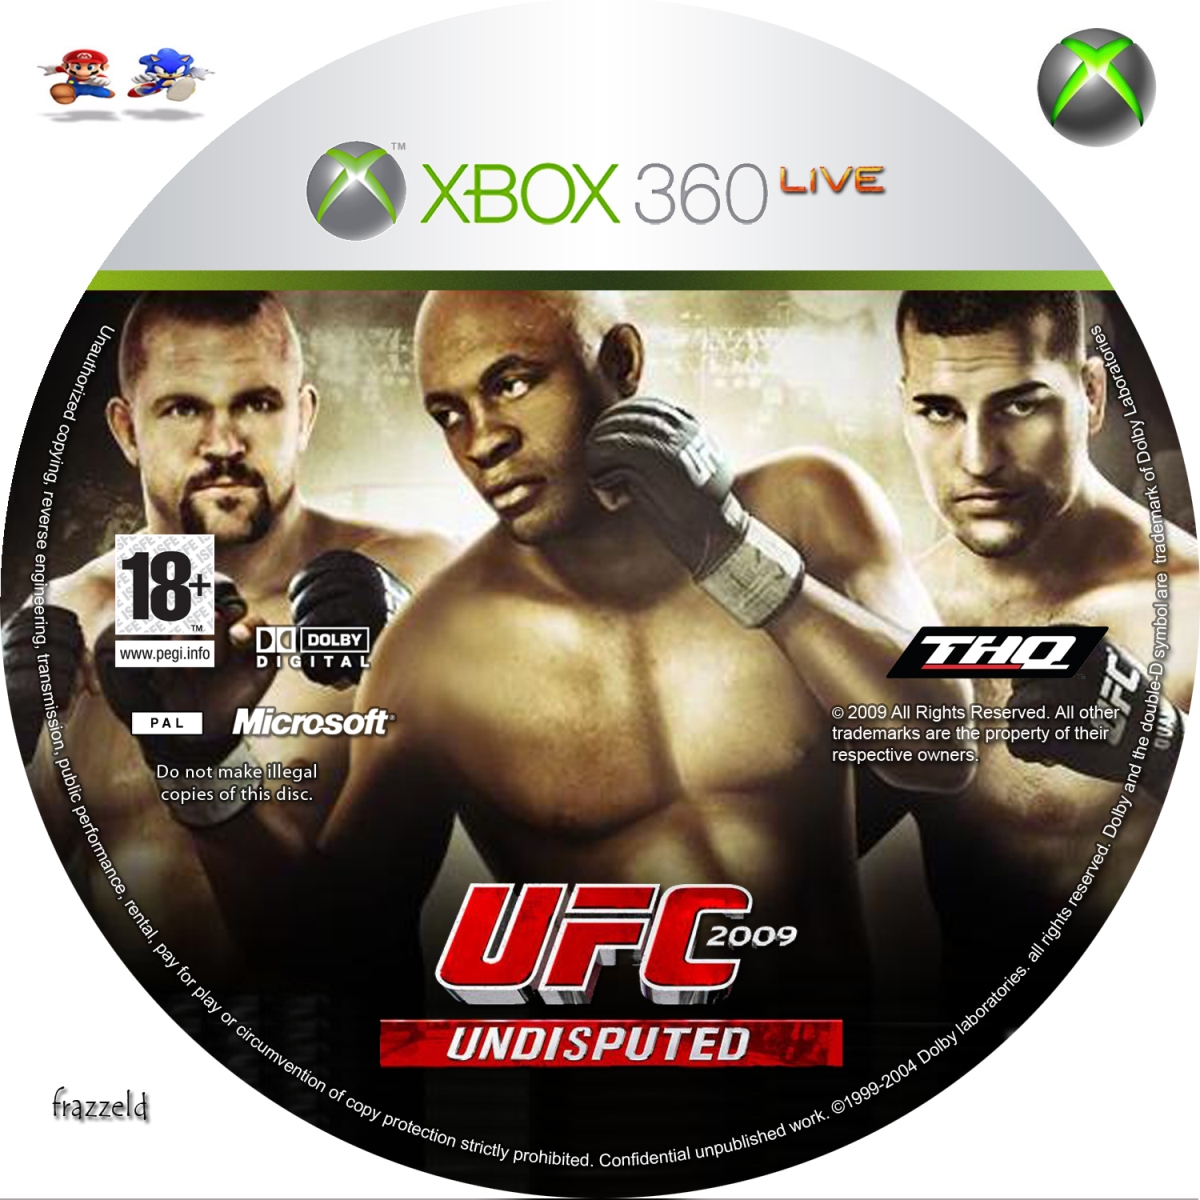 Игры xbox 360 москва. UFC 2009 Undisputed Xbox 360. UFC 3 Undisputed Xbox 360 диск. Обложка УФС 3 Xbox 360. Диск для Xbox 360 UFC 2.